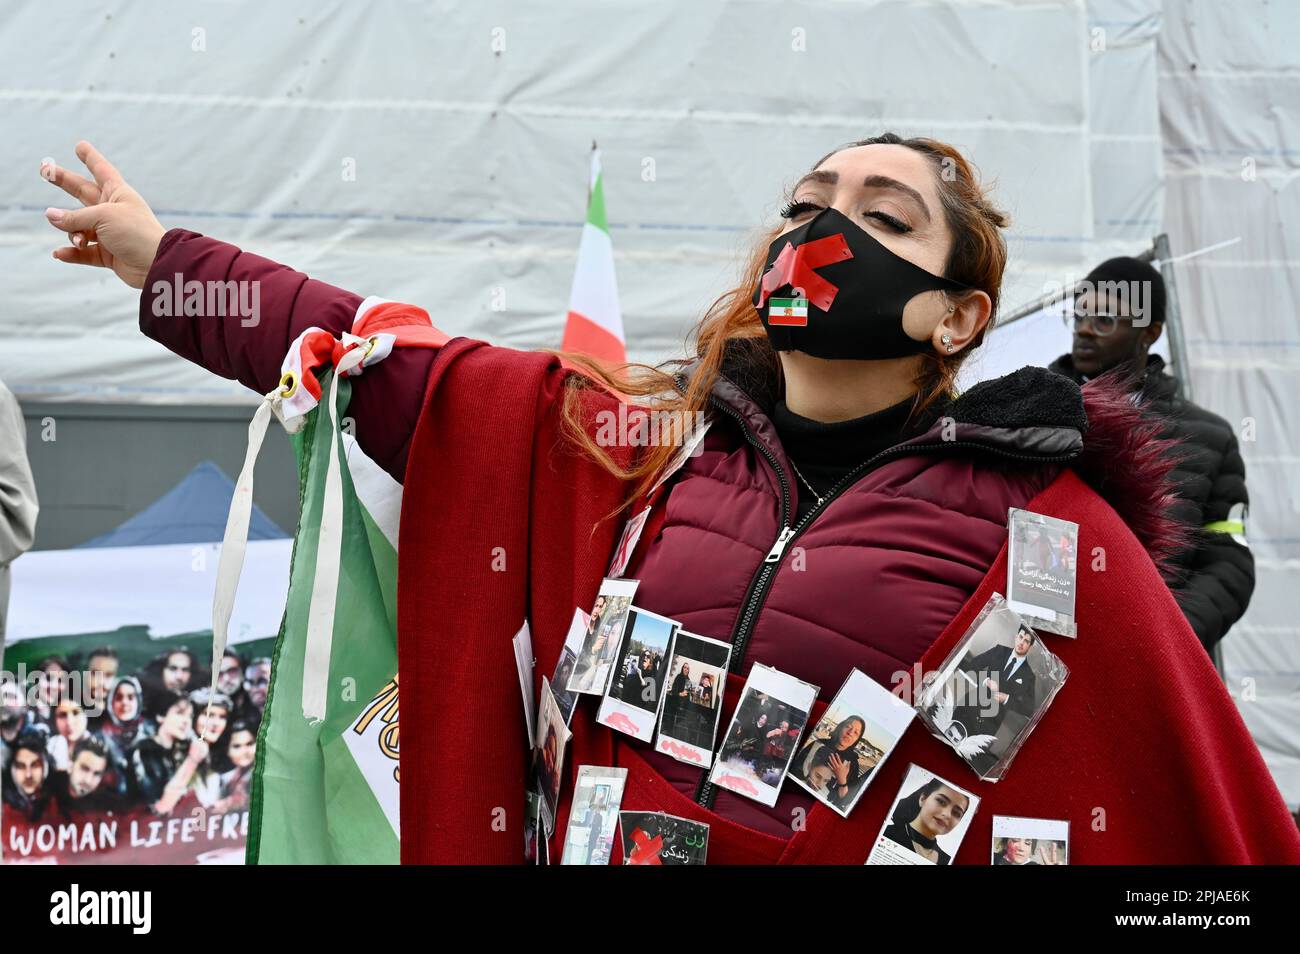 Londra, Regno Unito. Donne, vita, libertà le proteste sono continuate a Trafalgar Square mentre i manifestanti hanno chiesto la libertà per l'Iran. Credit: michael melia/Alamy Live News Foto Stock